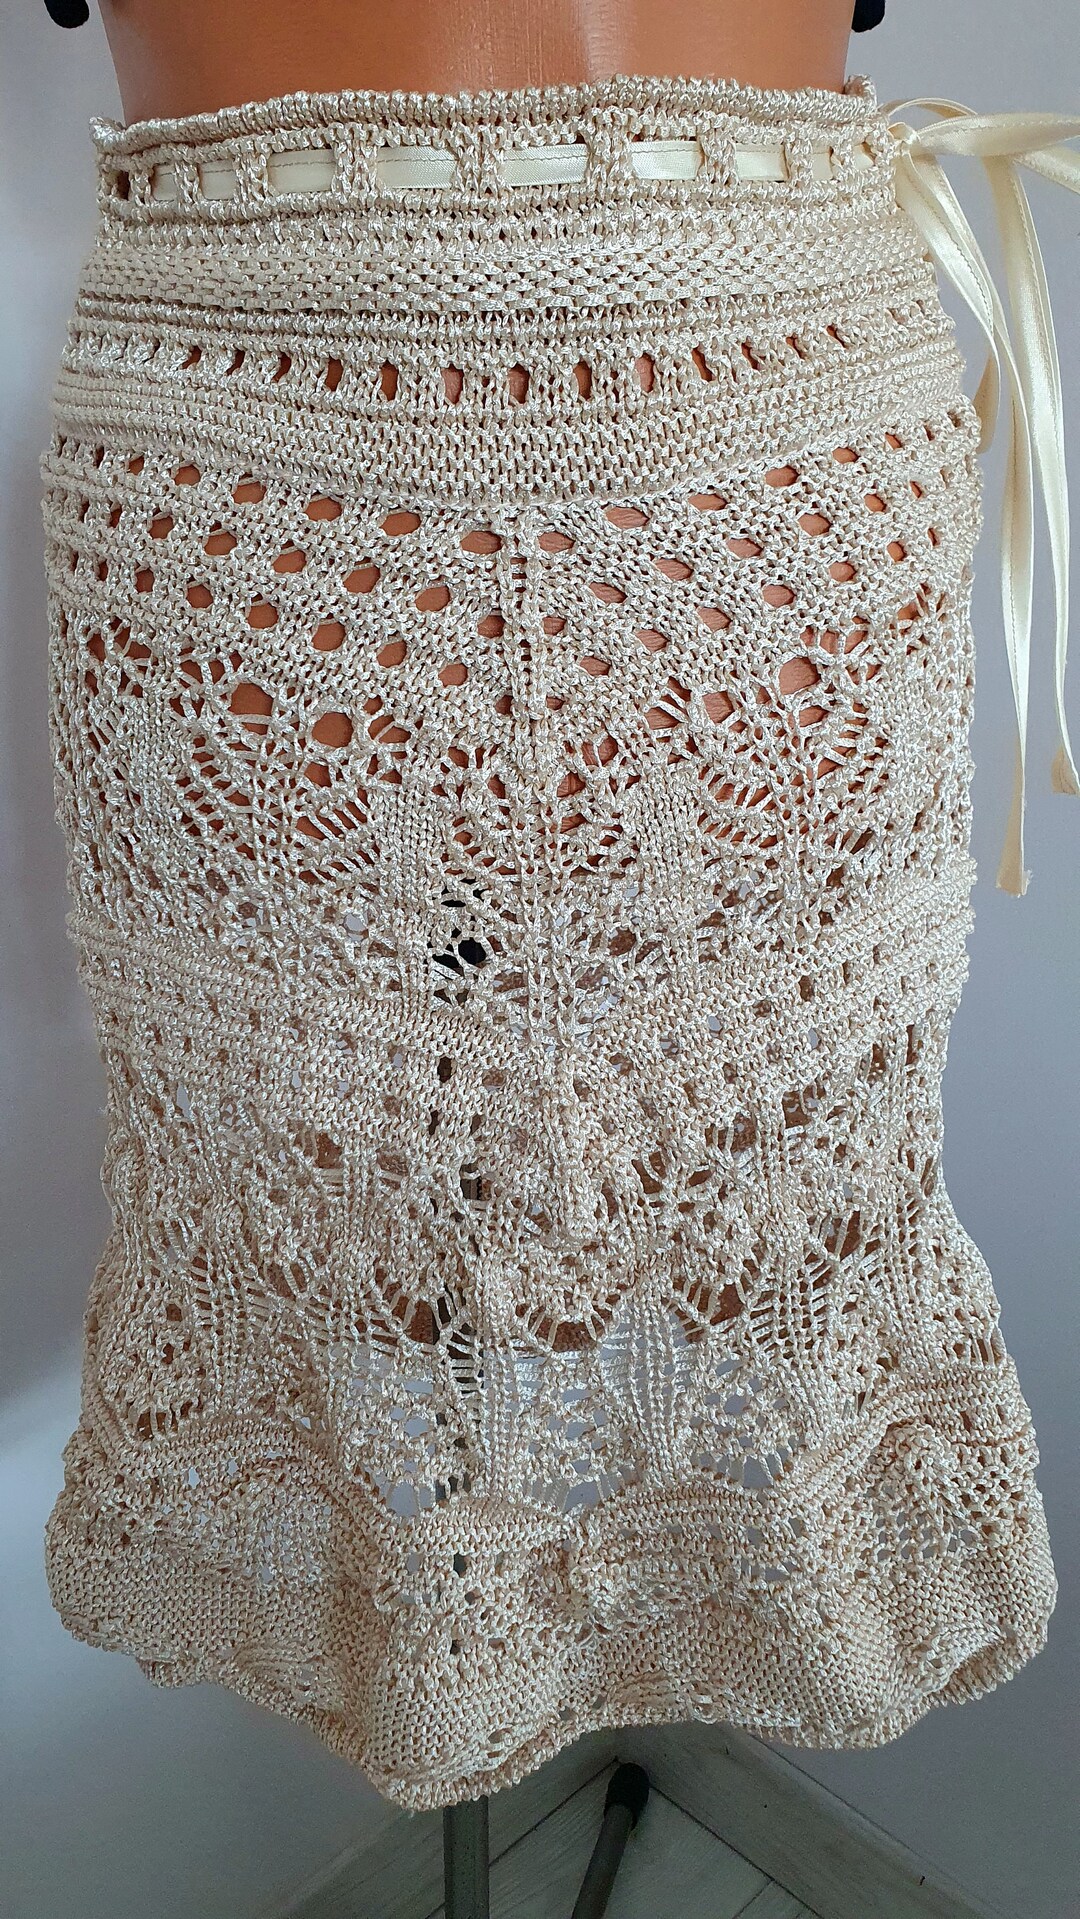 Beige Knitted / Crochet Hollow Out Skirt Summer Women Beach - Etsy